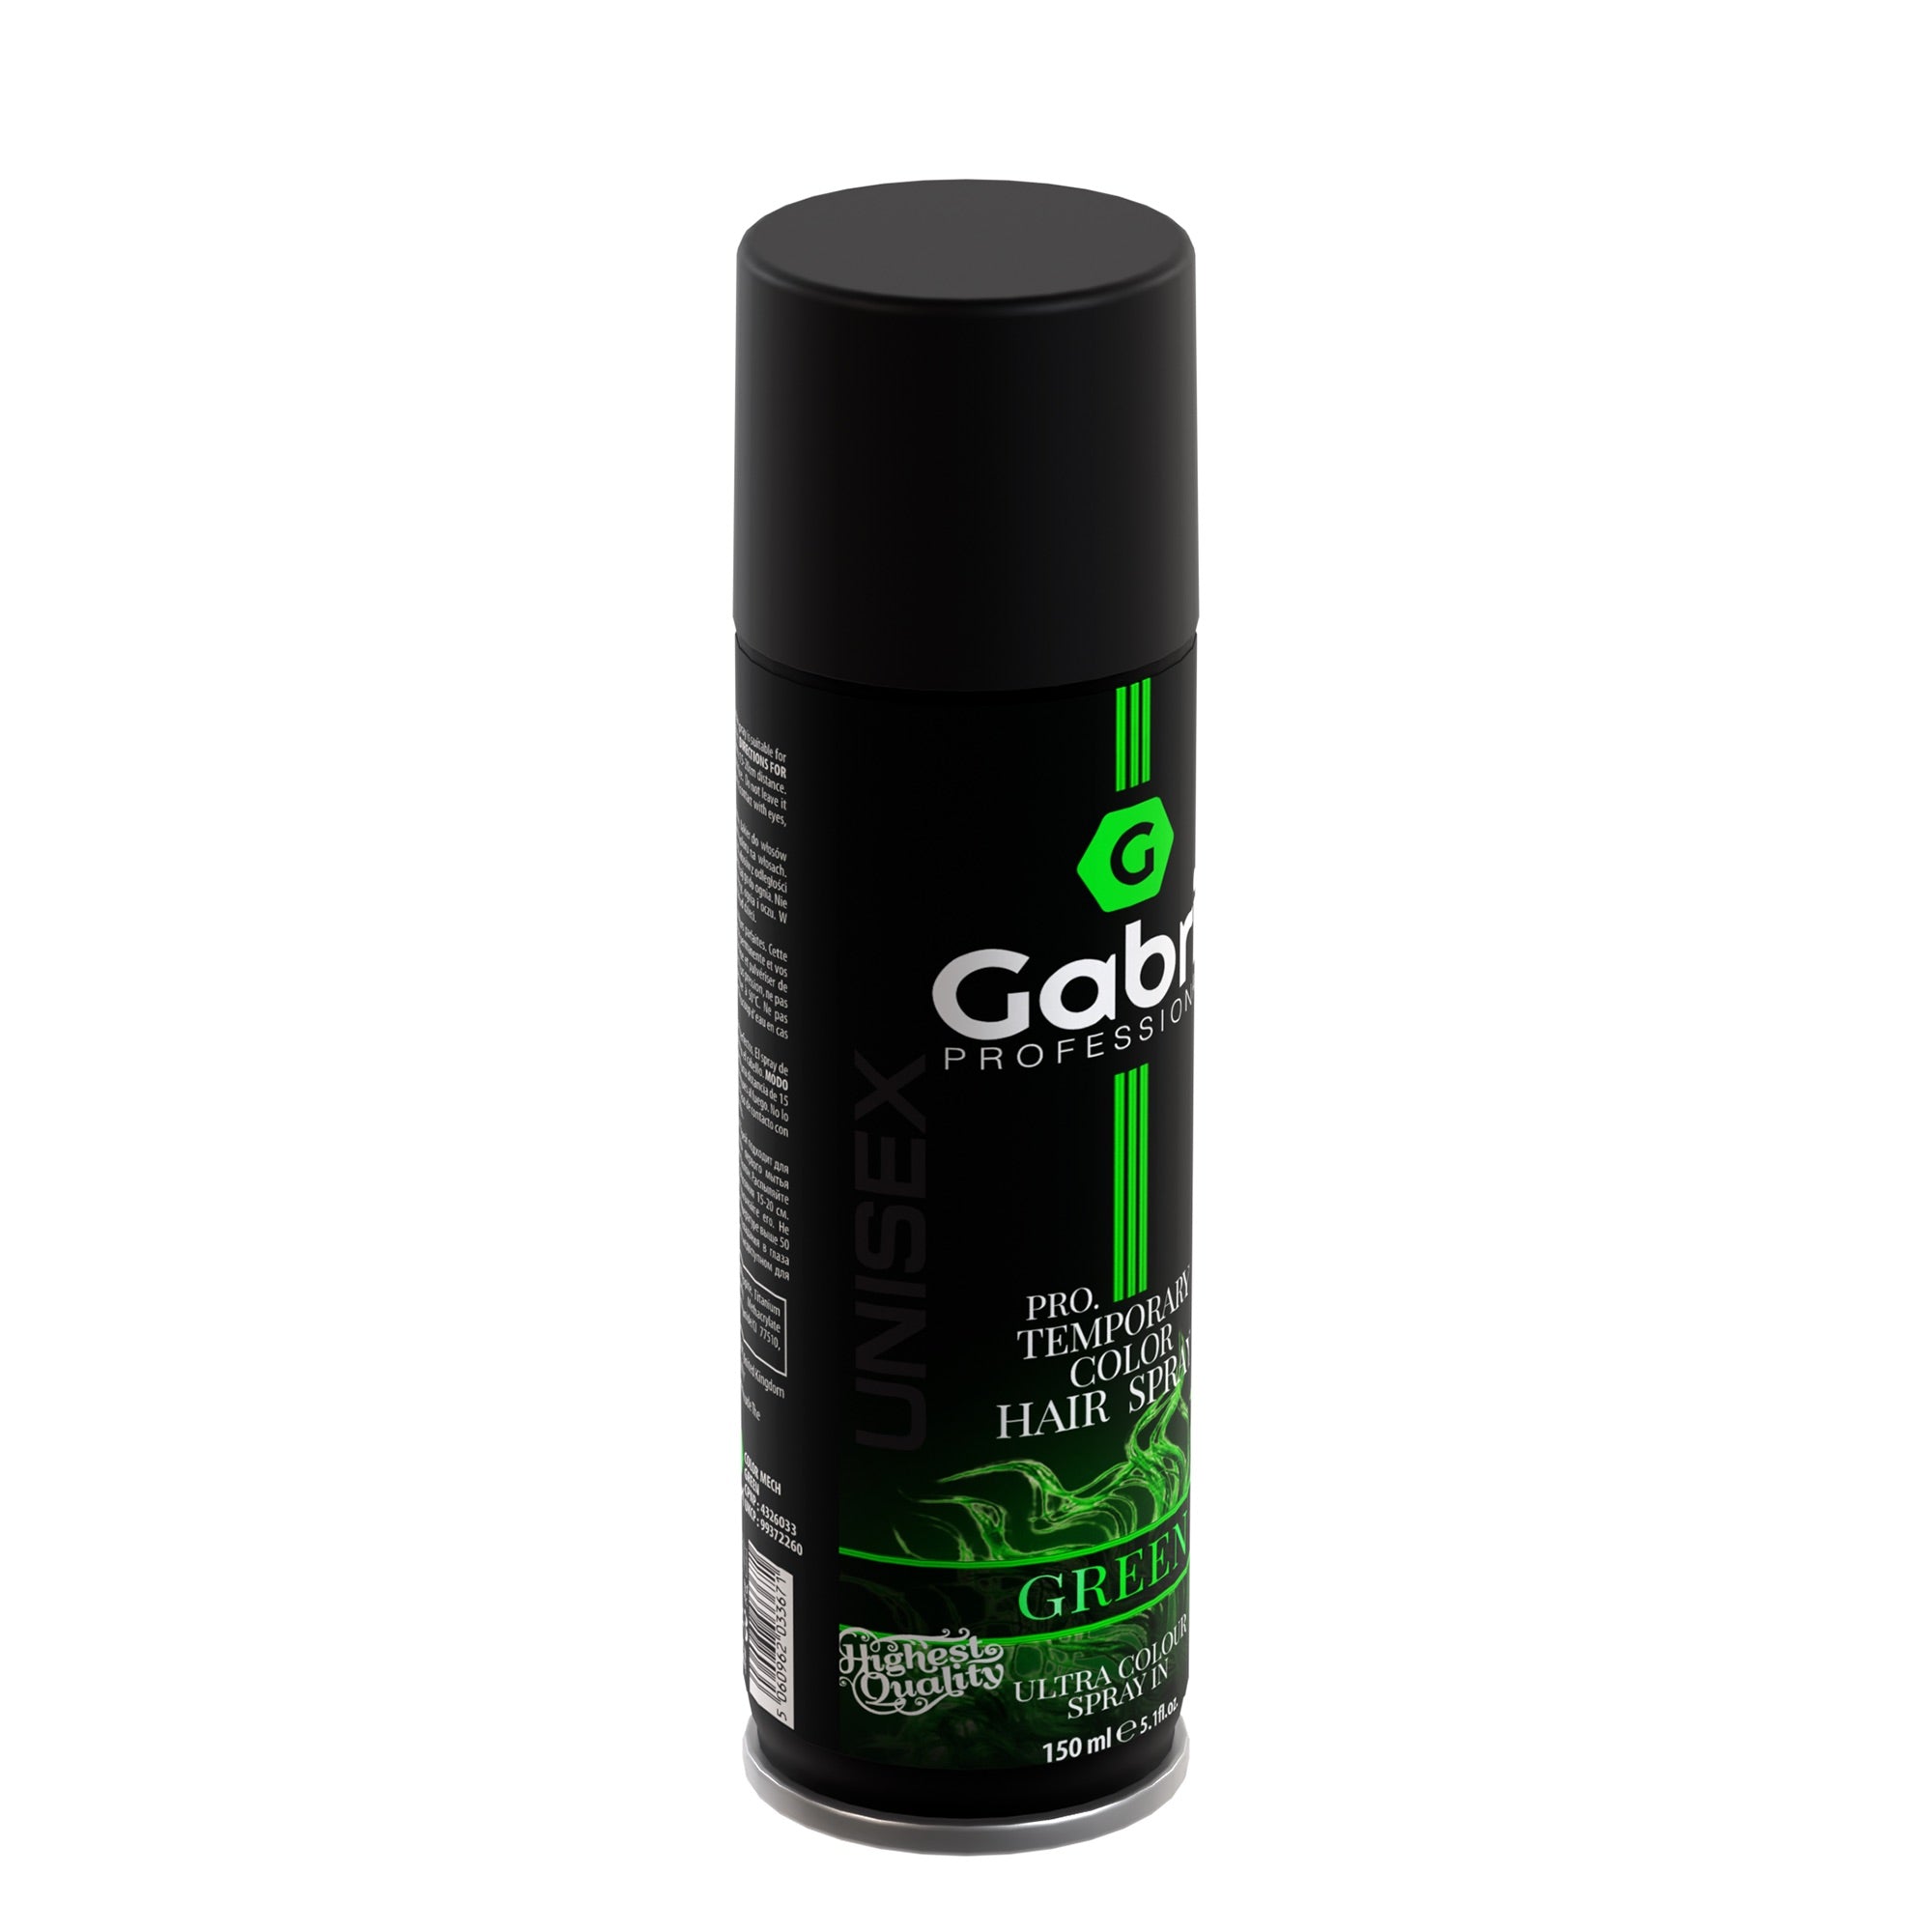 Gabri Professional - Temporary Hair Colour Dye Spray Green 150ml